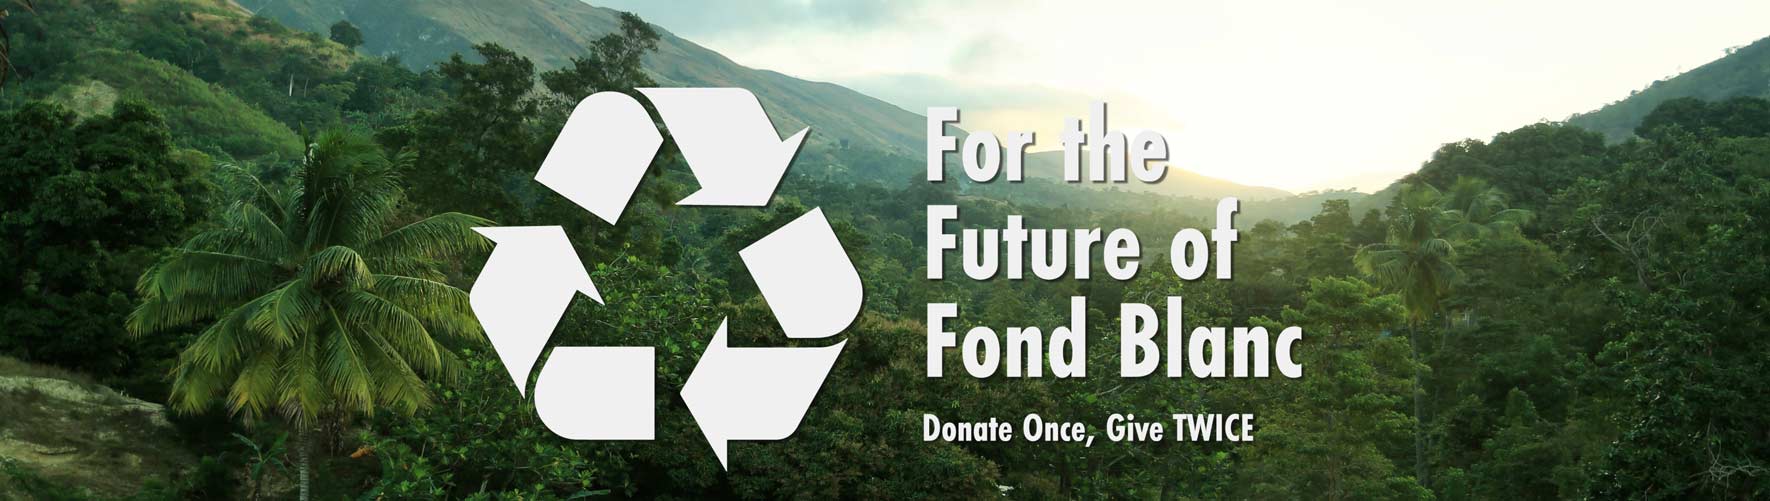 BLOG  Fond Blanc Foundation